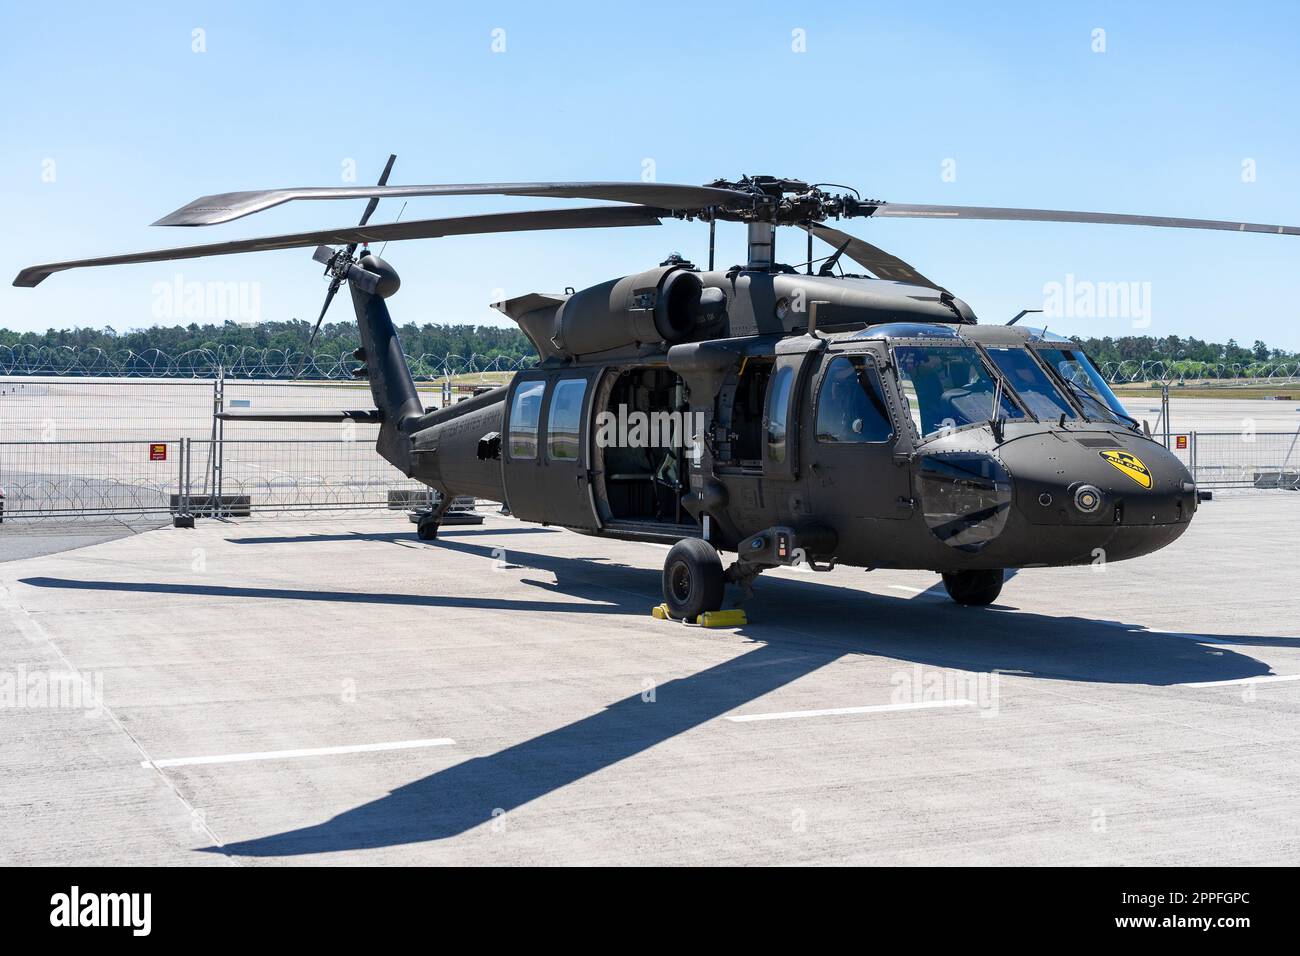 BERLINO, GERMANIA - 23 GIUGNO 2022: L'elicottero militare duplice e medio sollevamento Sikorsky UH-60 Black Hawk. Mostra ILA Berlin Air Show 2022 Foto Stock